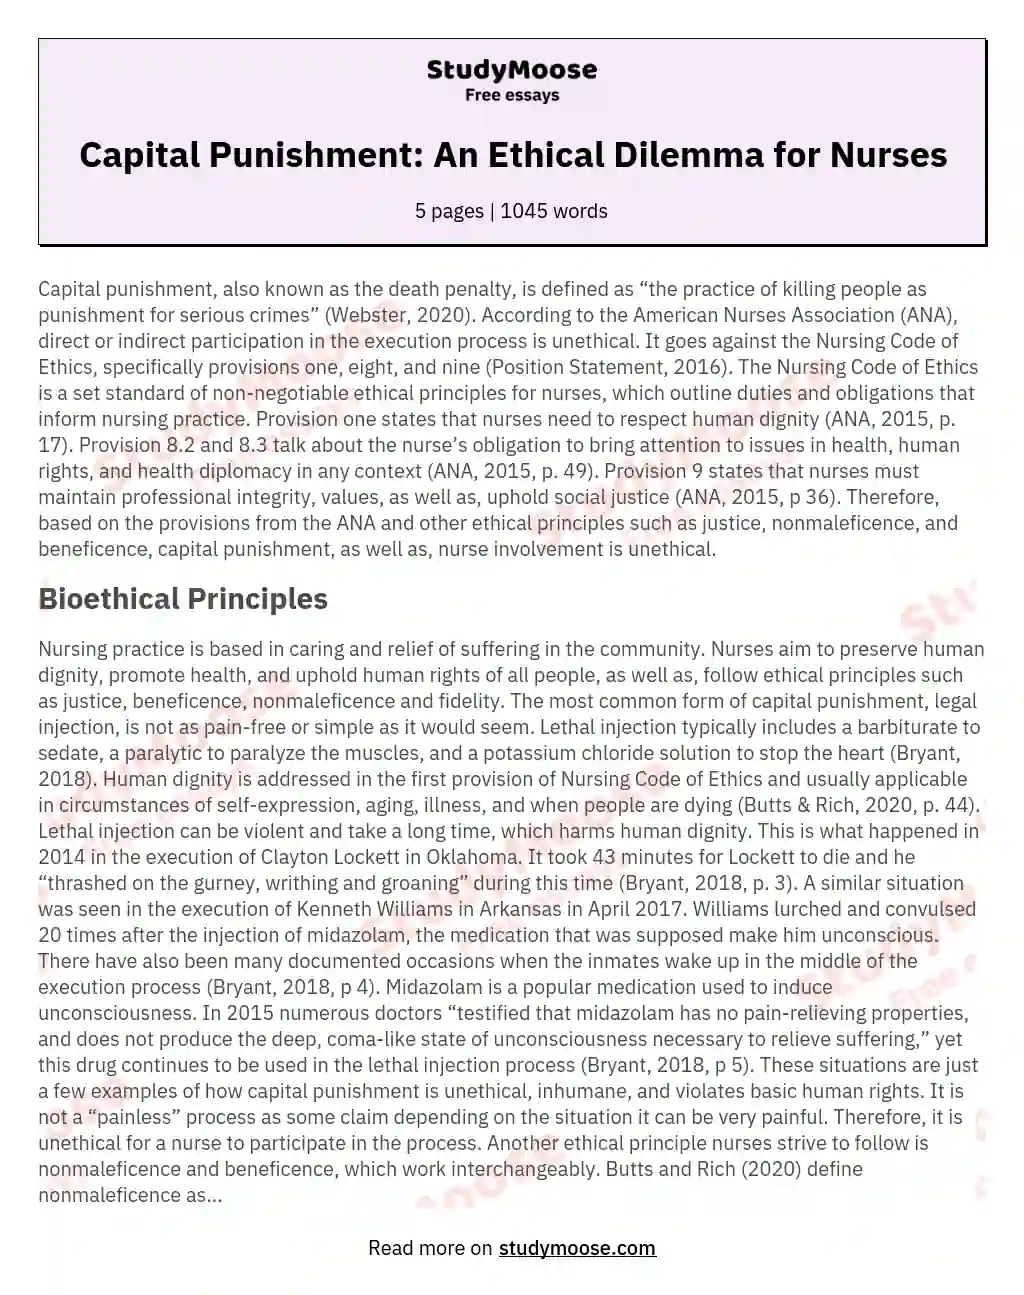 Capital Punishment: An Ethical Dilemma for Nurses essay